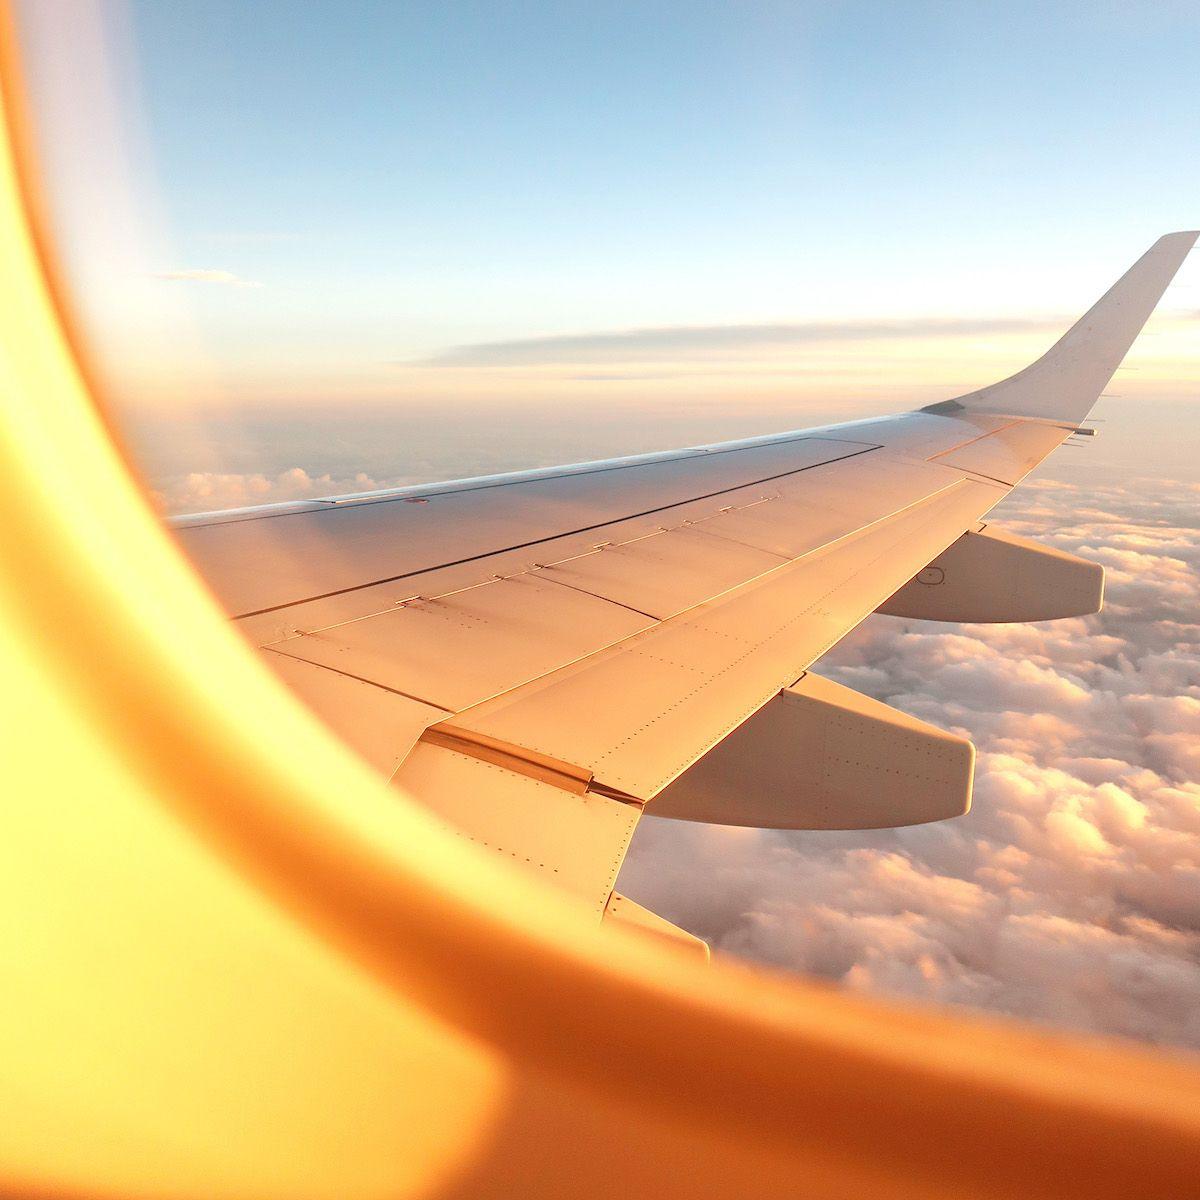 En flygplansvinge i solnedgång tagen från luften. I bilden syns en del av passagerarfönstret på flygplanet.